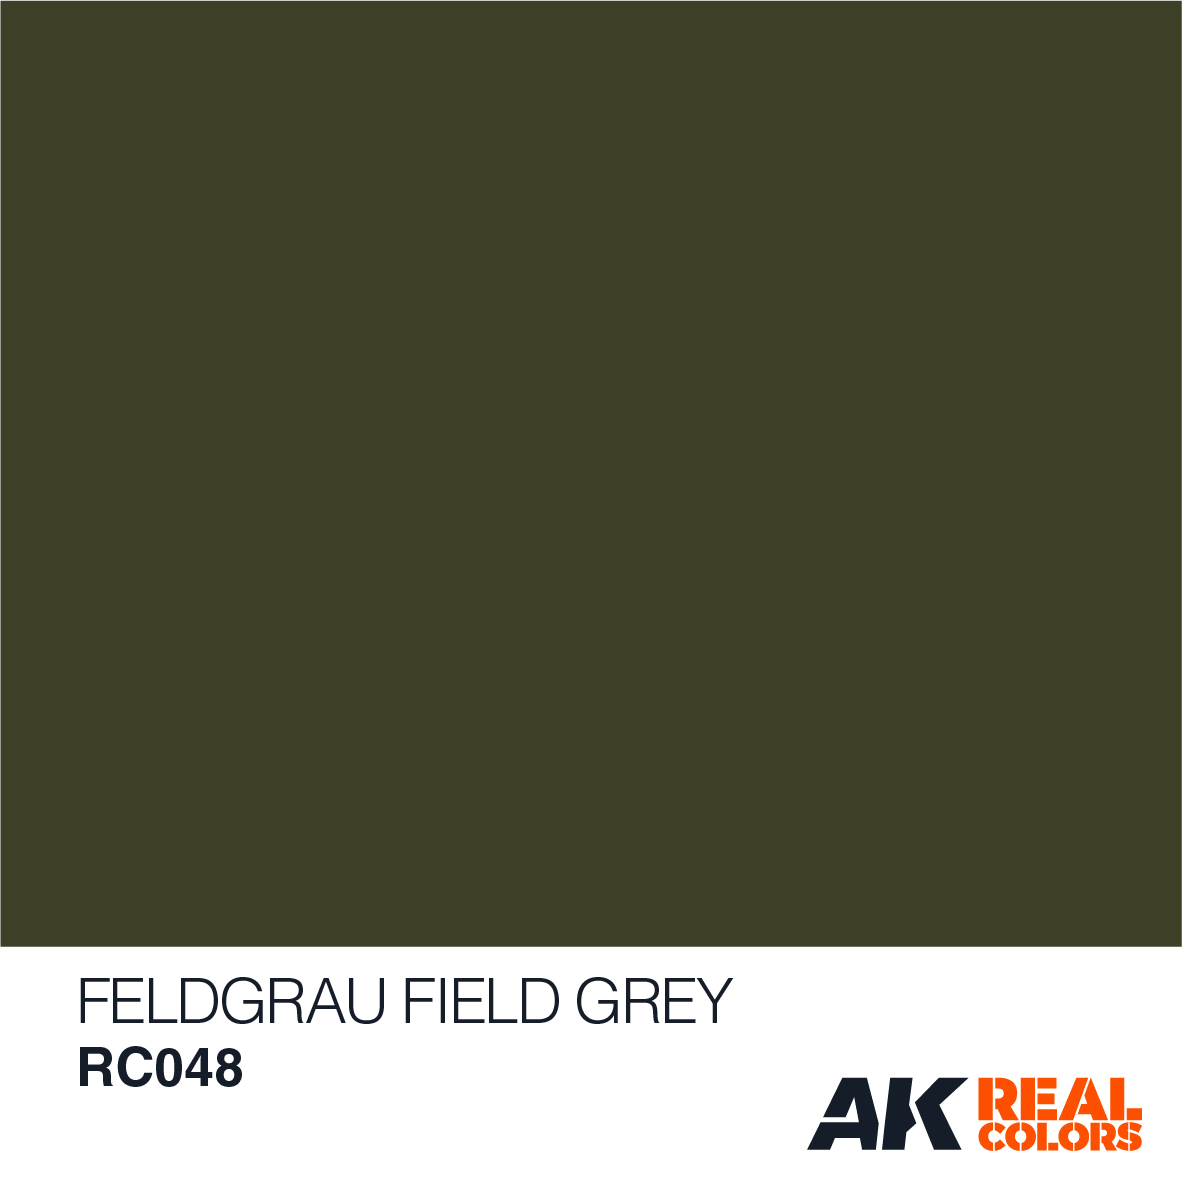 Feldgrau – Field Grey RAL 6006